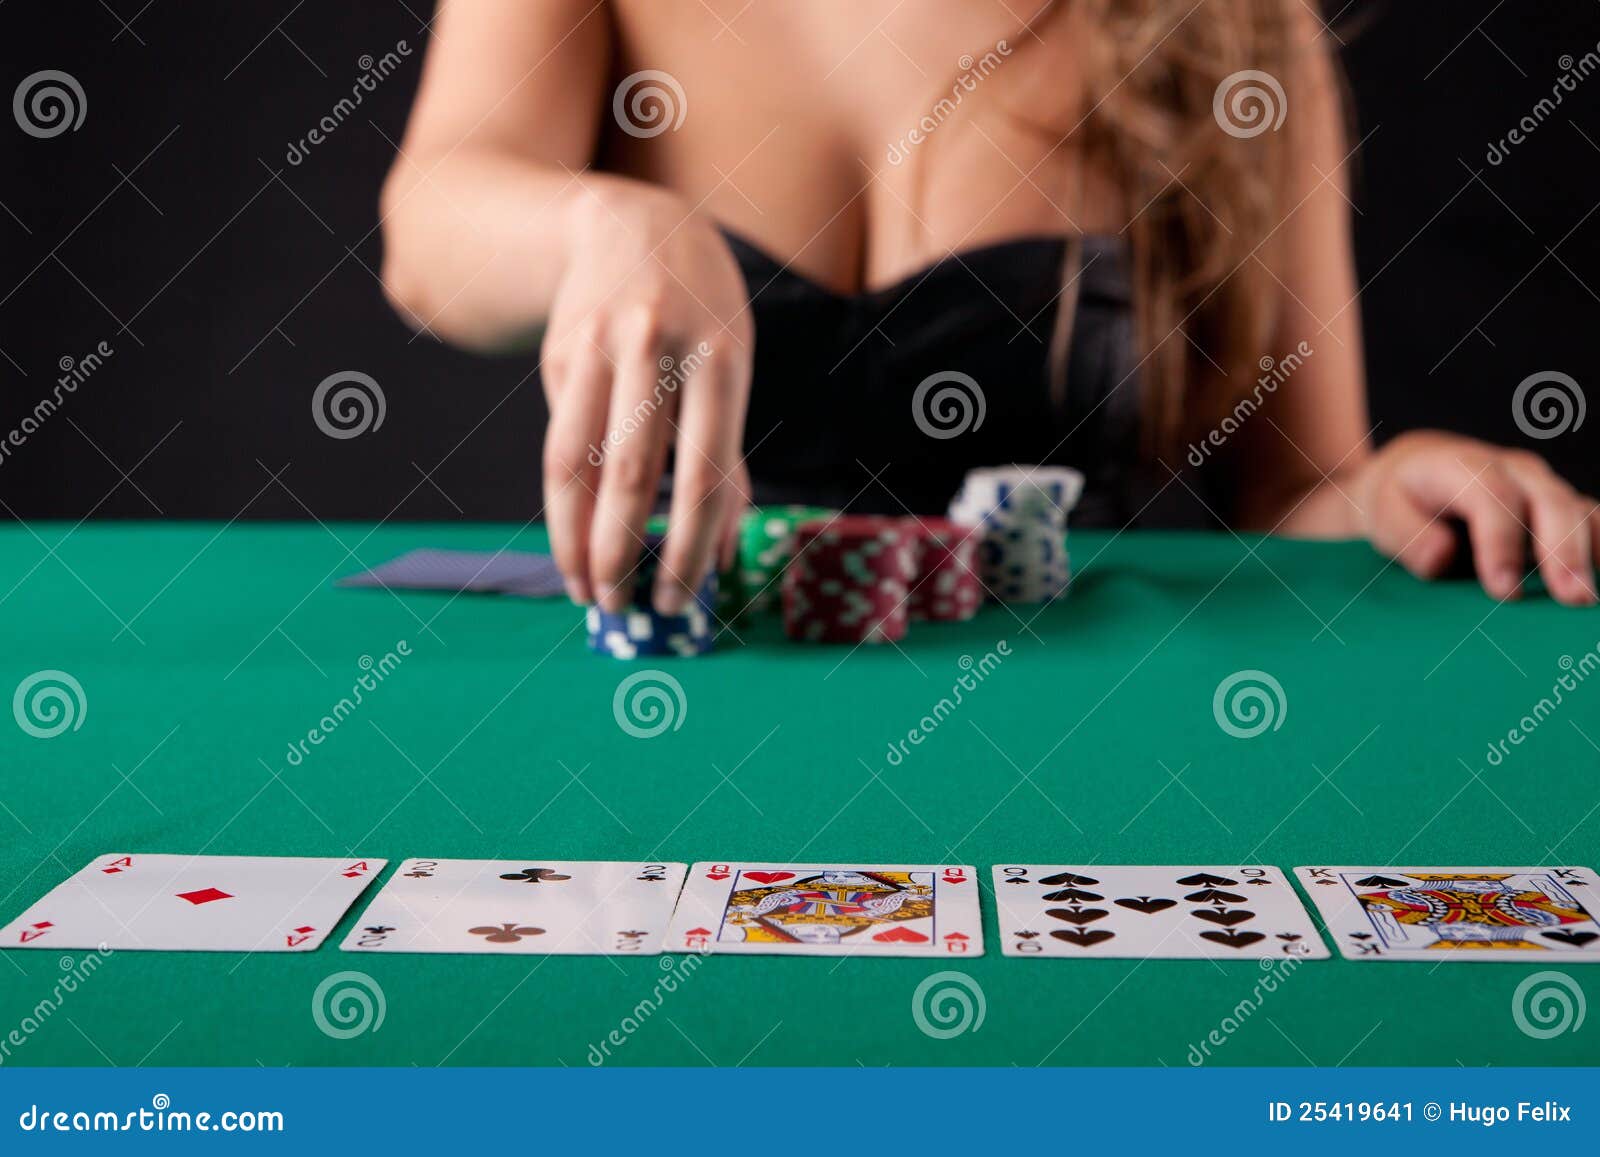 Поиграли в карты на раздевание. Покер девушки. Красивые дамы в покере. Красивая девушка крупье в Покер. Покер Эстетика.